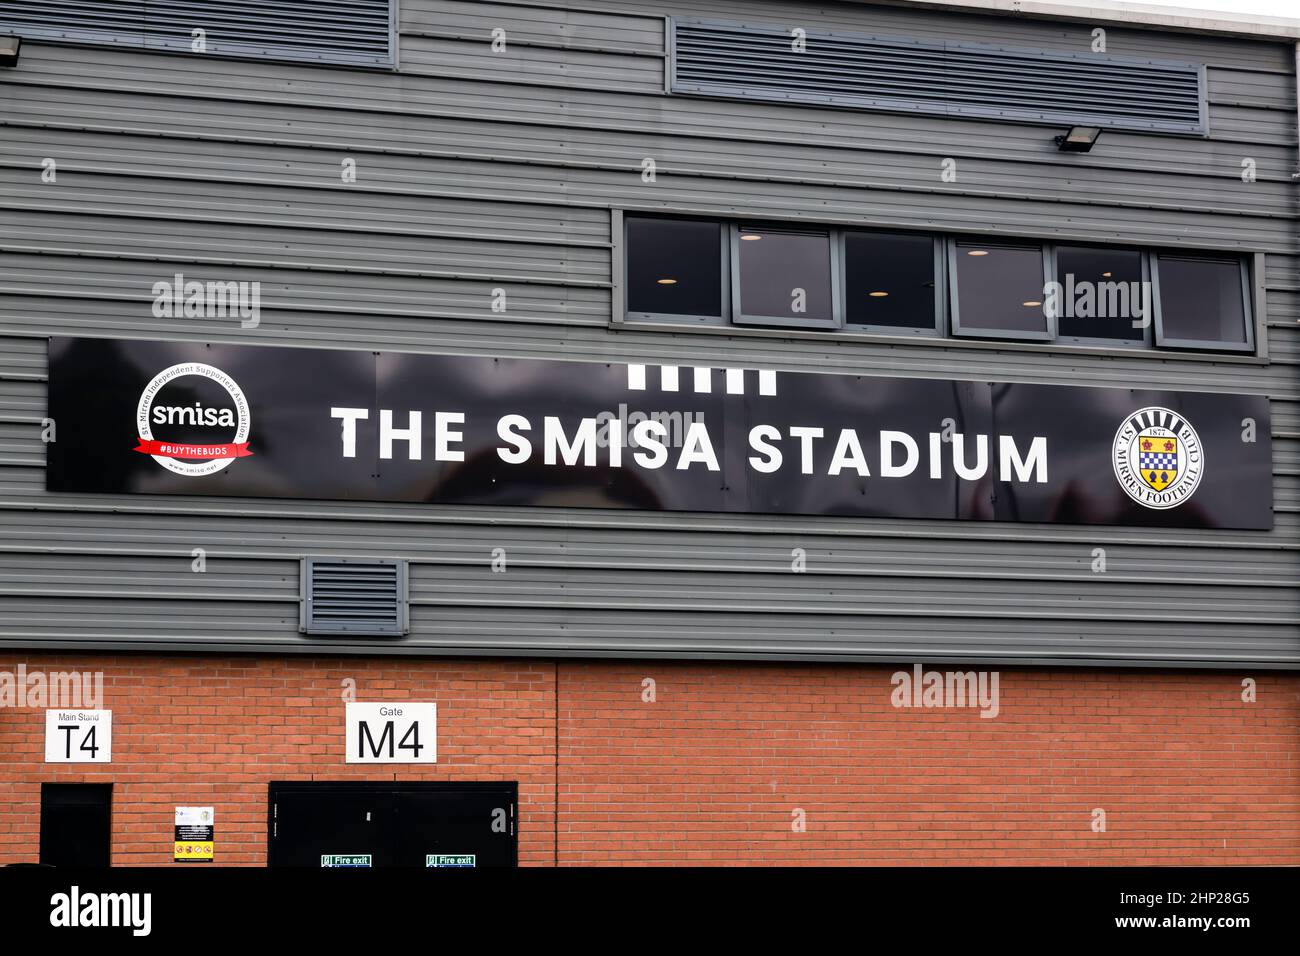 Insegna SMISA Stadium all'esterno del St. Mirren Park, sede del St Mirren Football Club, Greenhill Road, Paisley, Renfrewshire, Scozia, REGNO UNITO Foto Stock